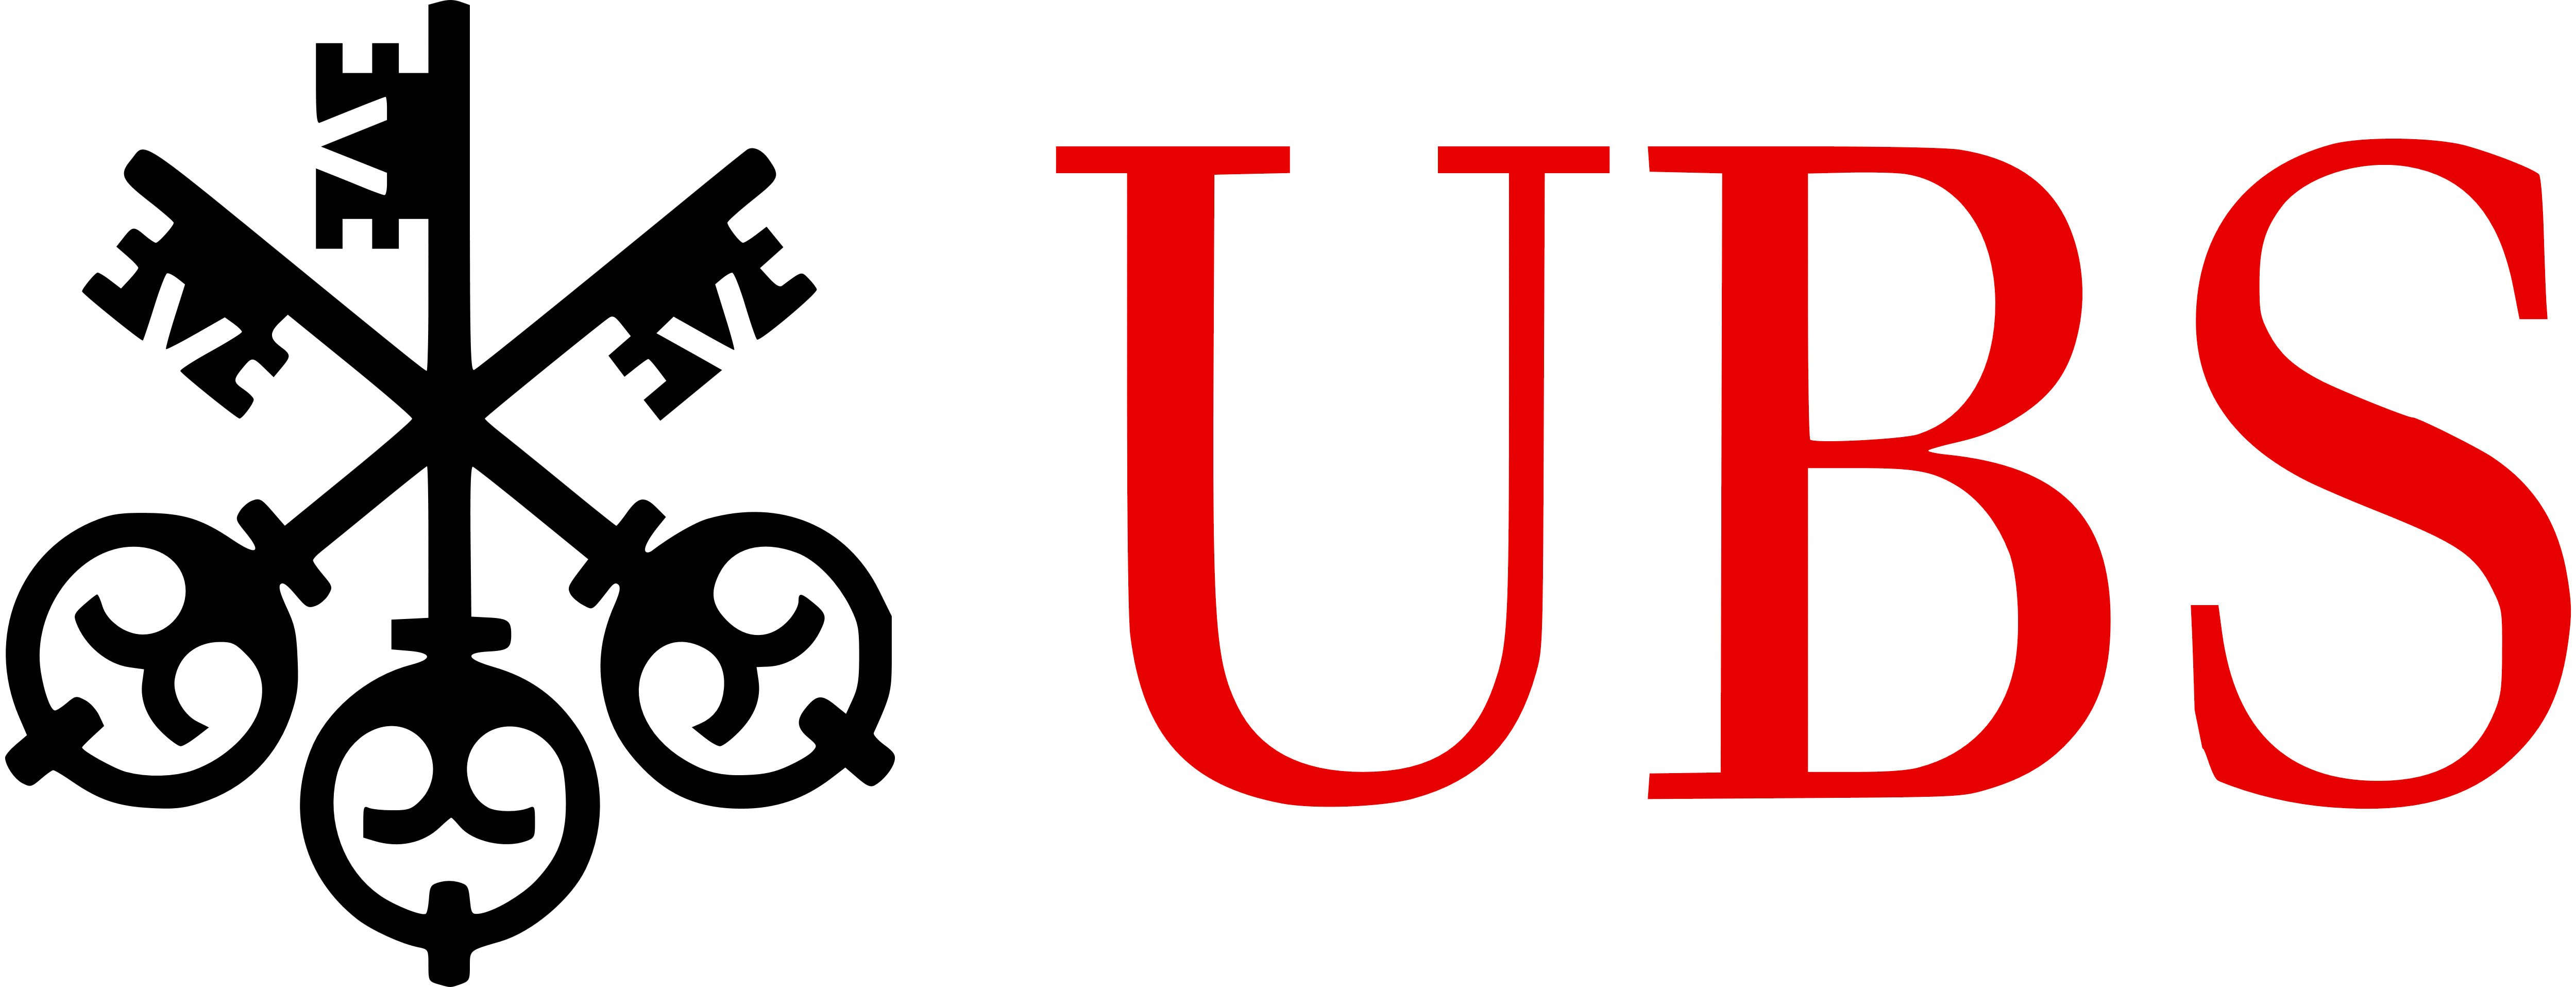 UBS company logo